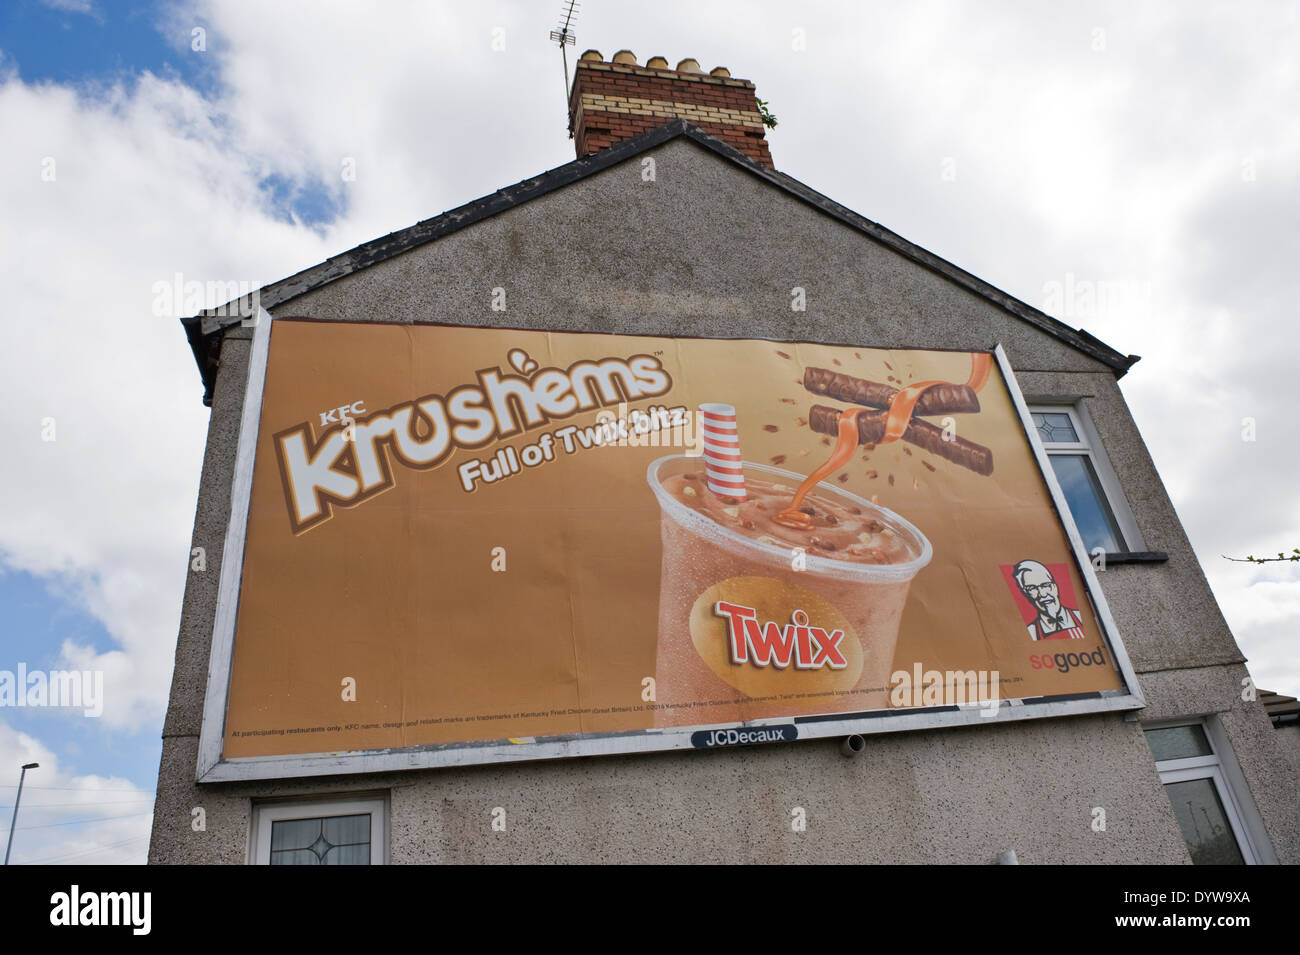 KFC Krushems con Twix cartelloni pubblicitari sul sito di JCDecaux sulla parete laterale della casa in Newport South Wales UK Foto Stock